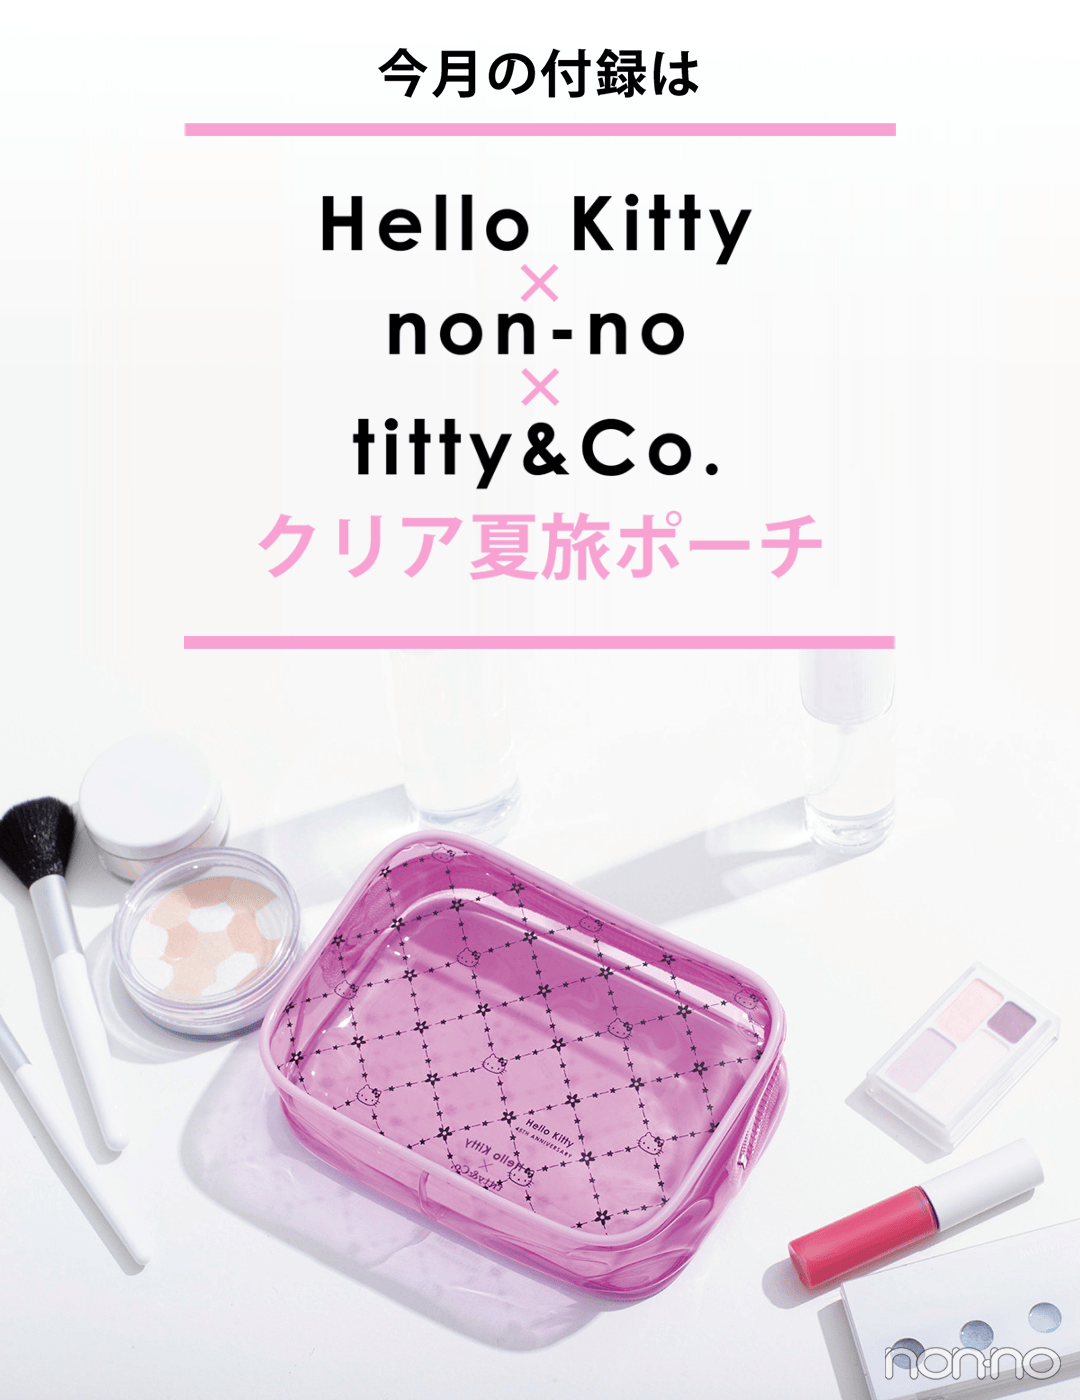 今月号の特別付録は...Hello Kitty×non-no×titty&Co.♡クリア夏旅ポーチ